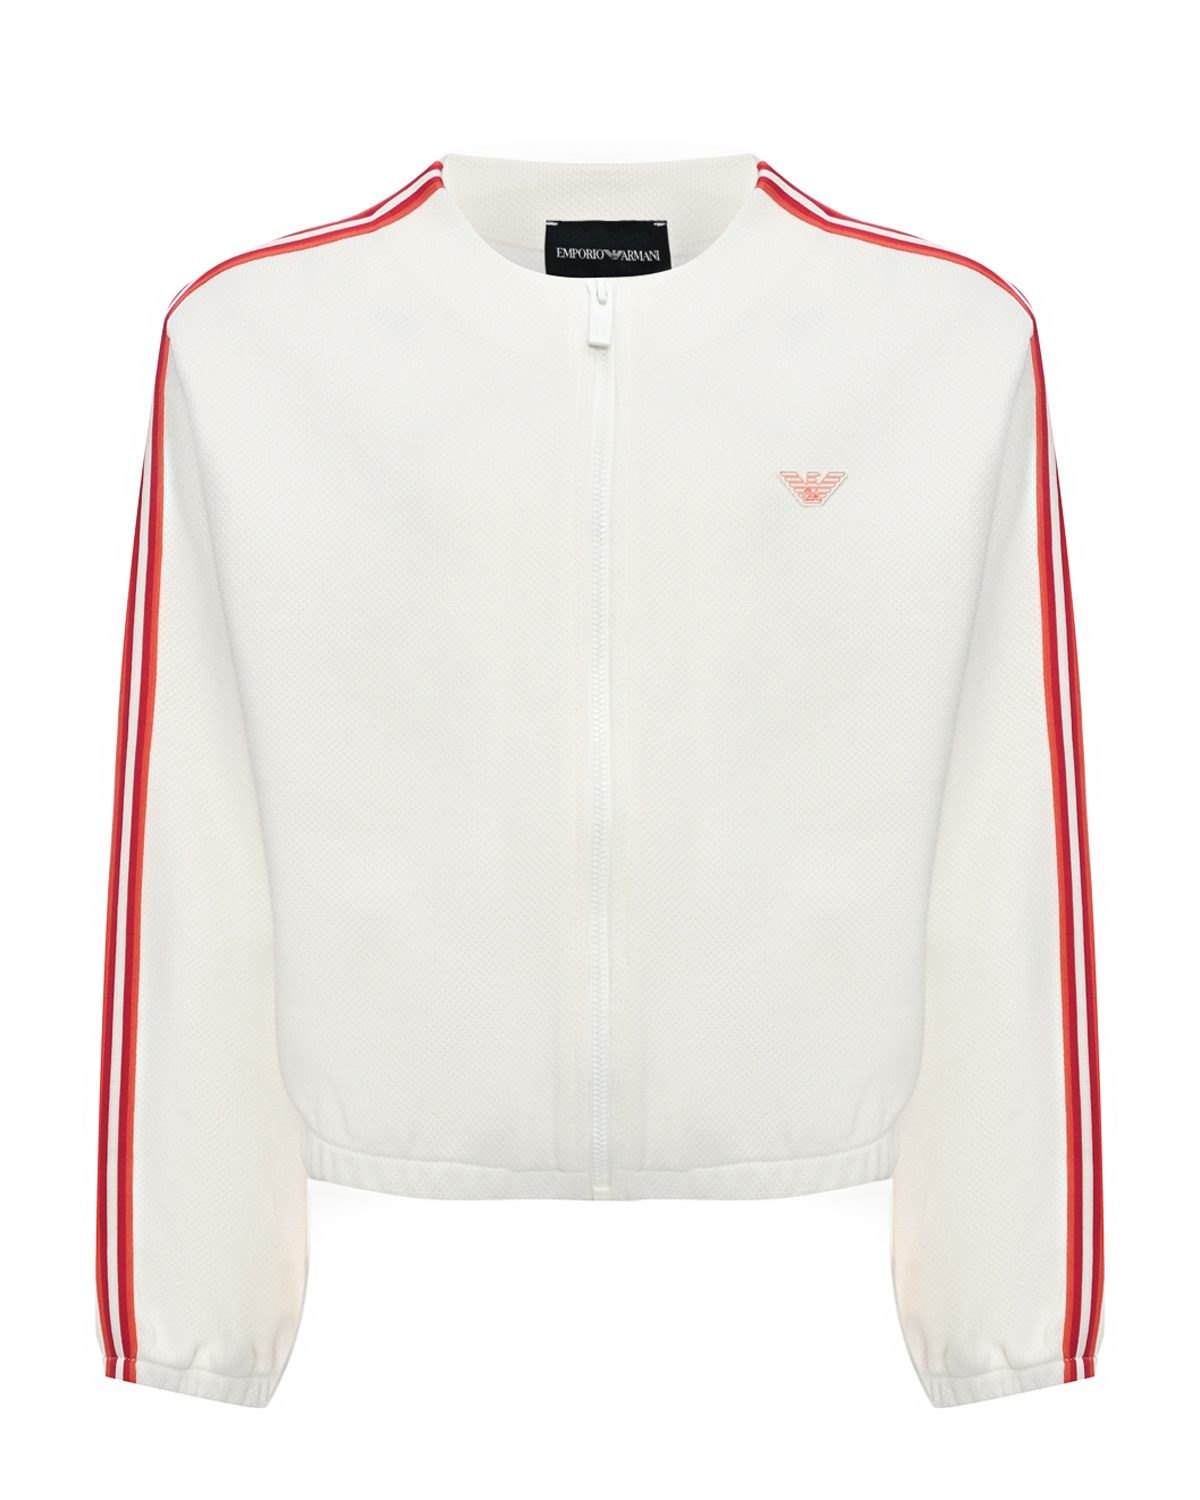 Спортивная куртка с красными лампасами Emporio Armani, размер 140, цвет белый - фото 1